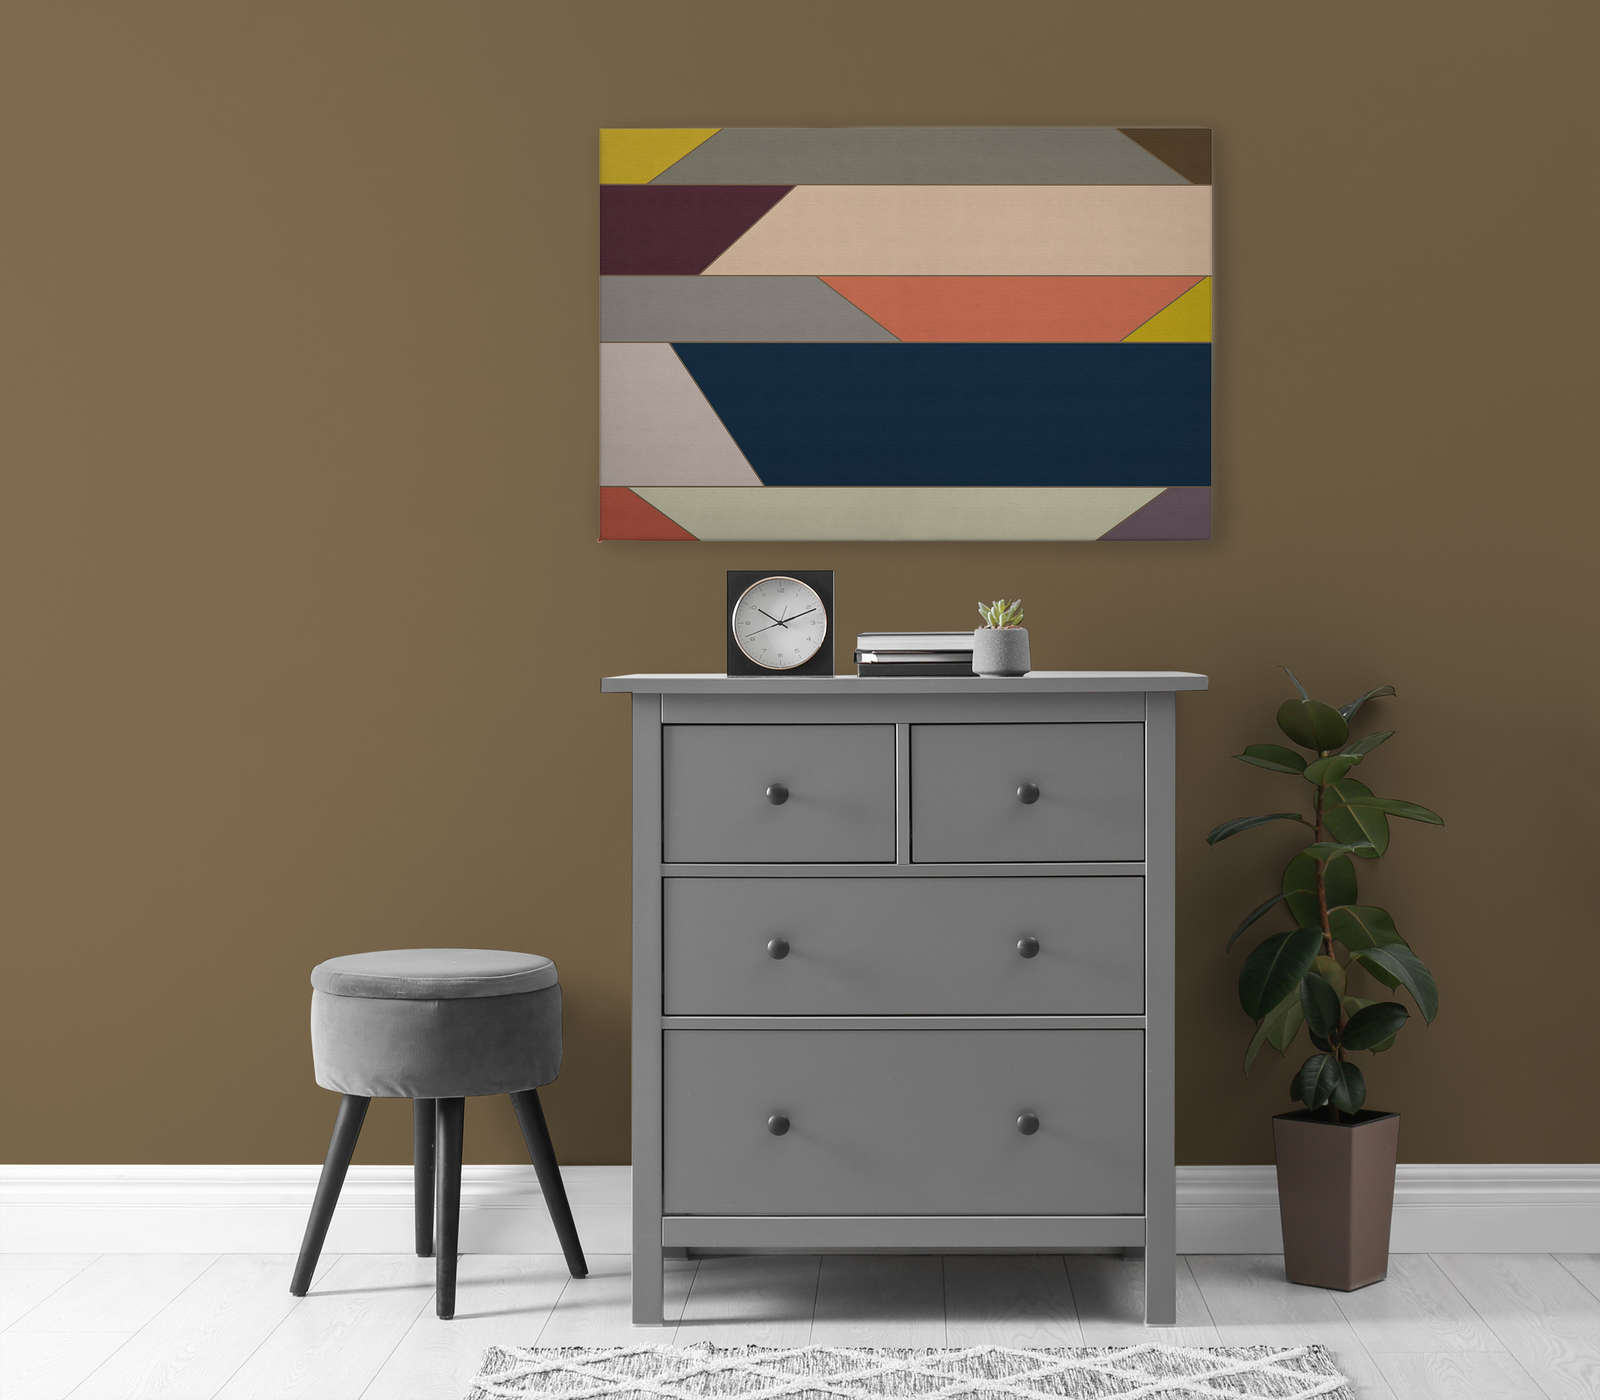             Geometrie 1 - Canvas schilderij met kleurrijk horizontaal streeppatroon - geribbelde structuur - 0,90 m x 0,60 m
        